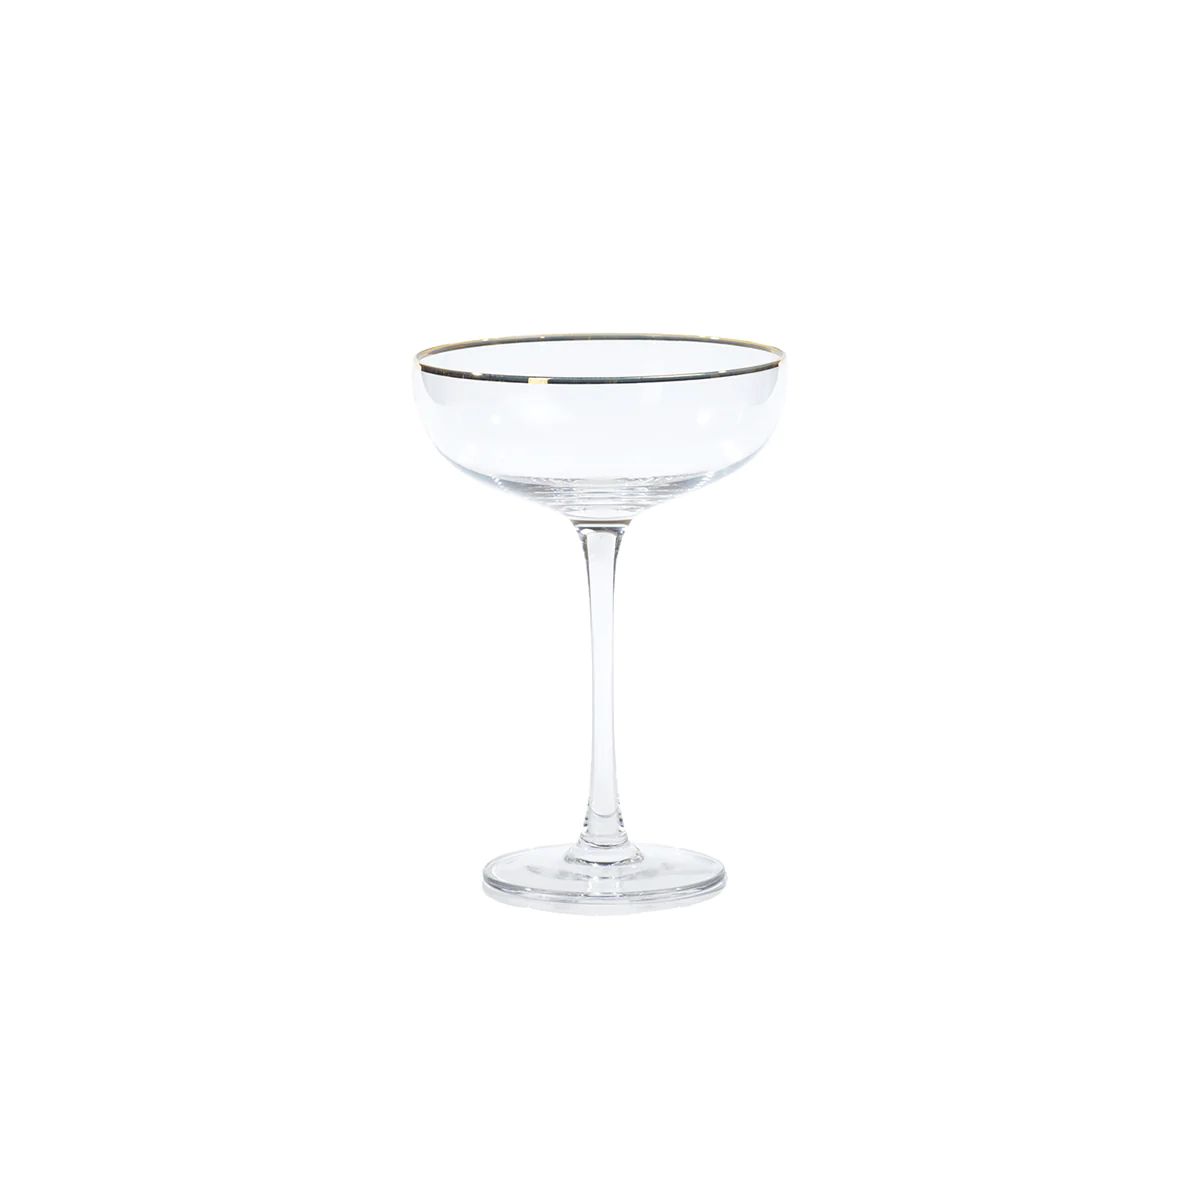 Gold Rim Martini Glass | Tuesday Made